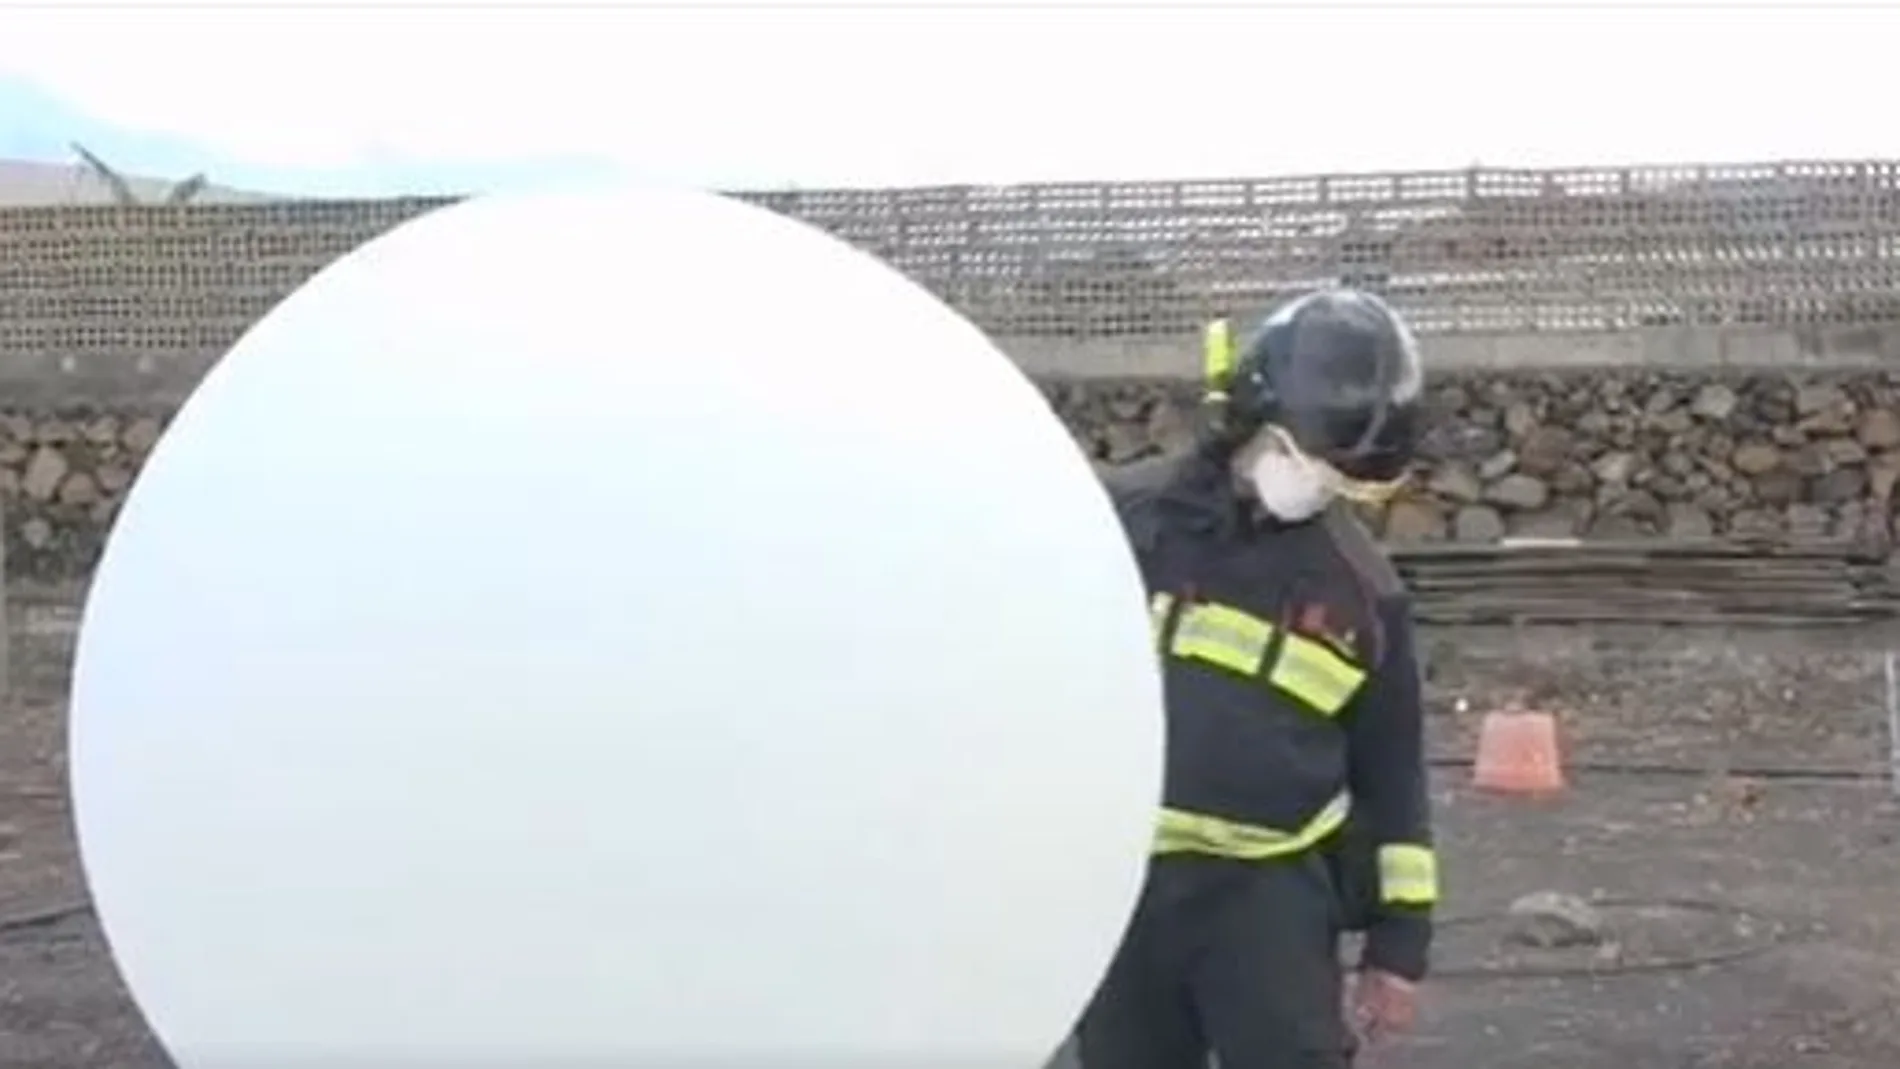 La UME lanza un globo aerostático para dar información sobre el aire a la AEMET